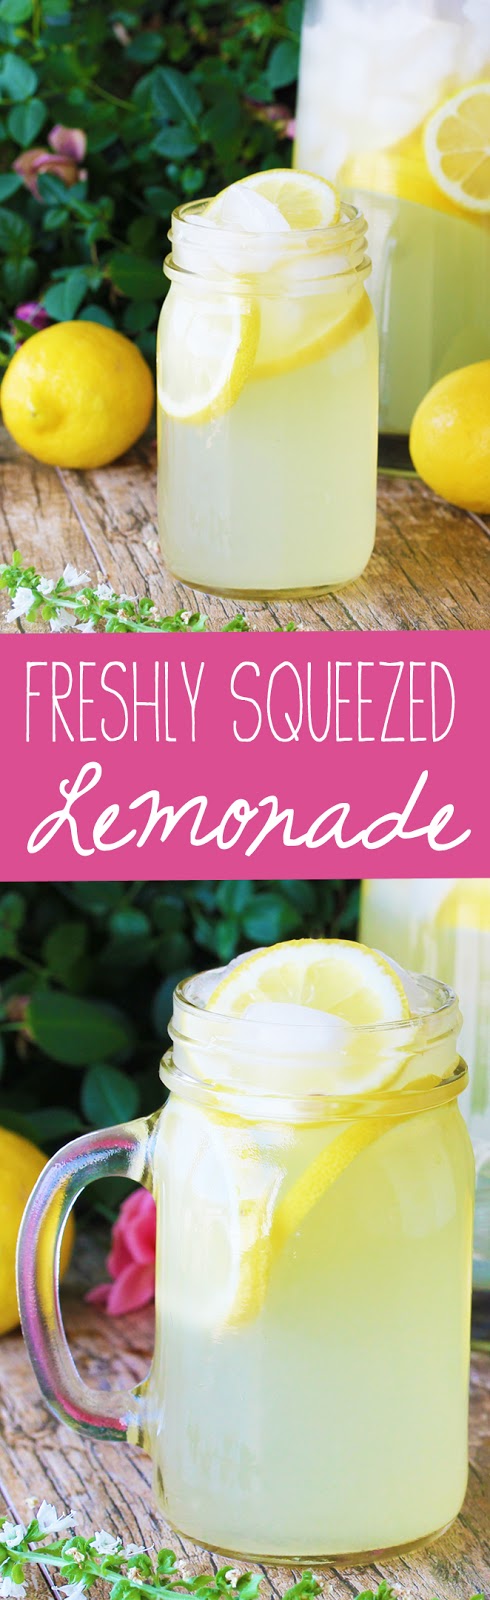  freshly squeezed homemade lemonade recipe using real lemons How to Make Homemade Lemonade with Real Lemons